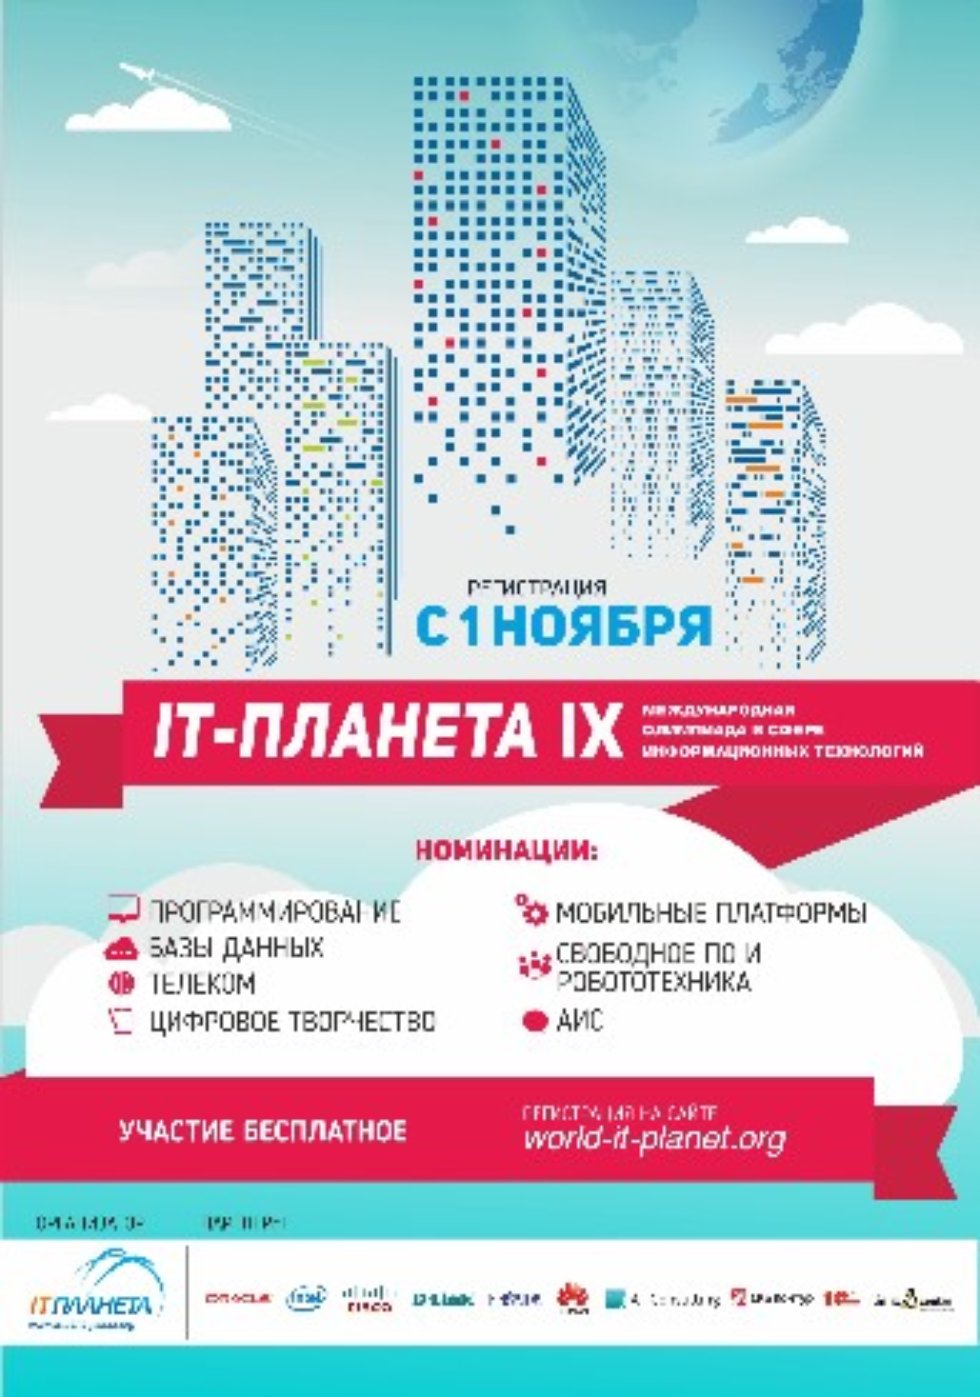    IX       'IT- 2015/16' ,, IT-, 